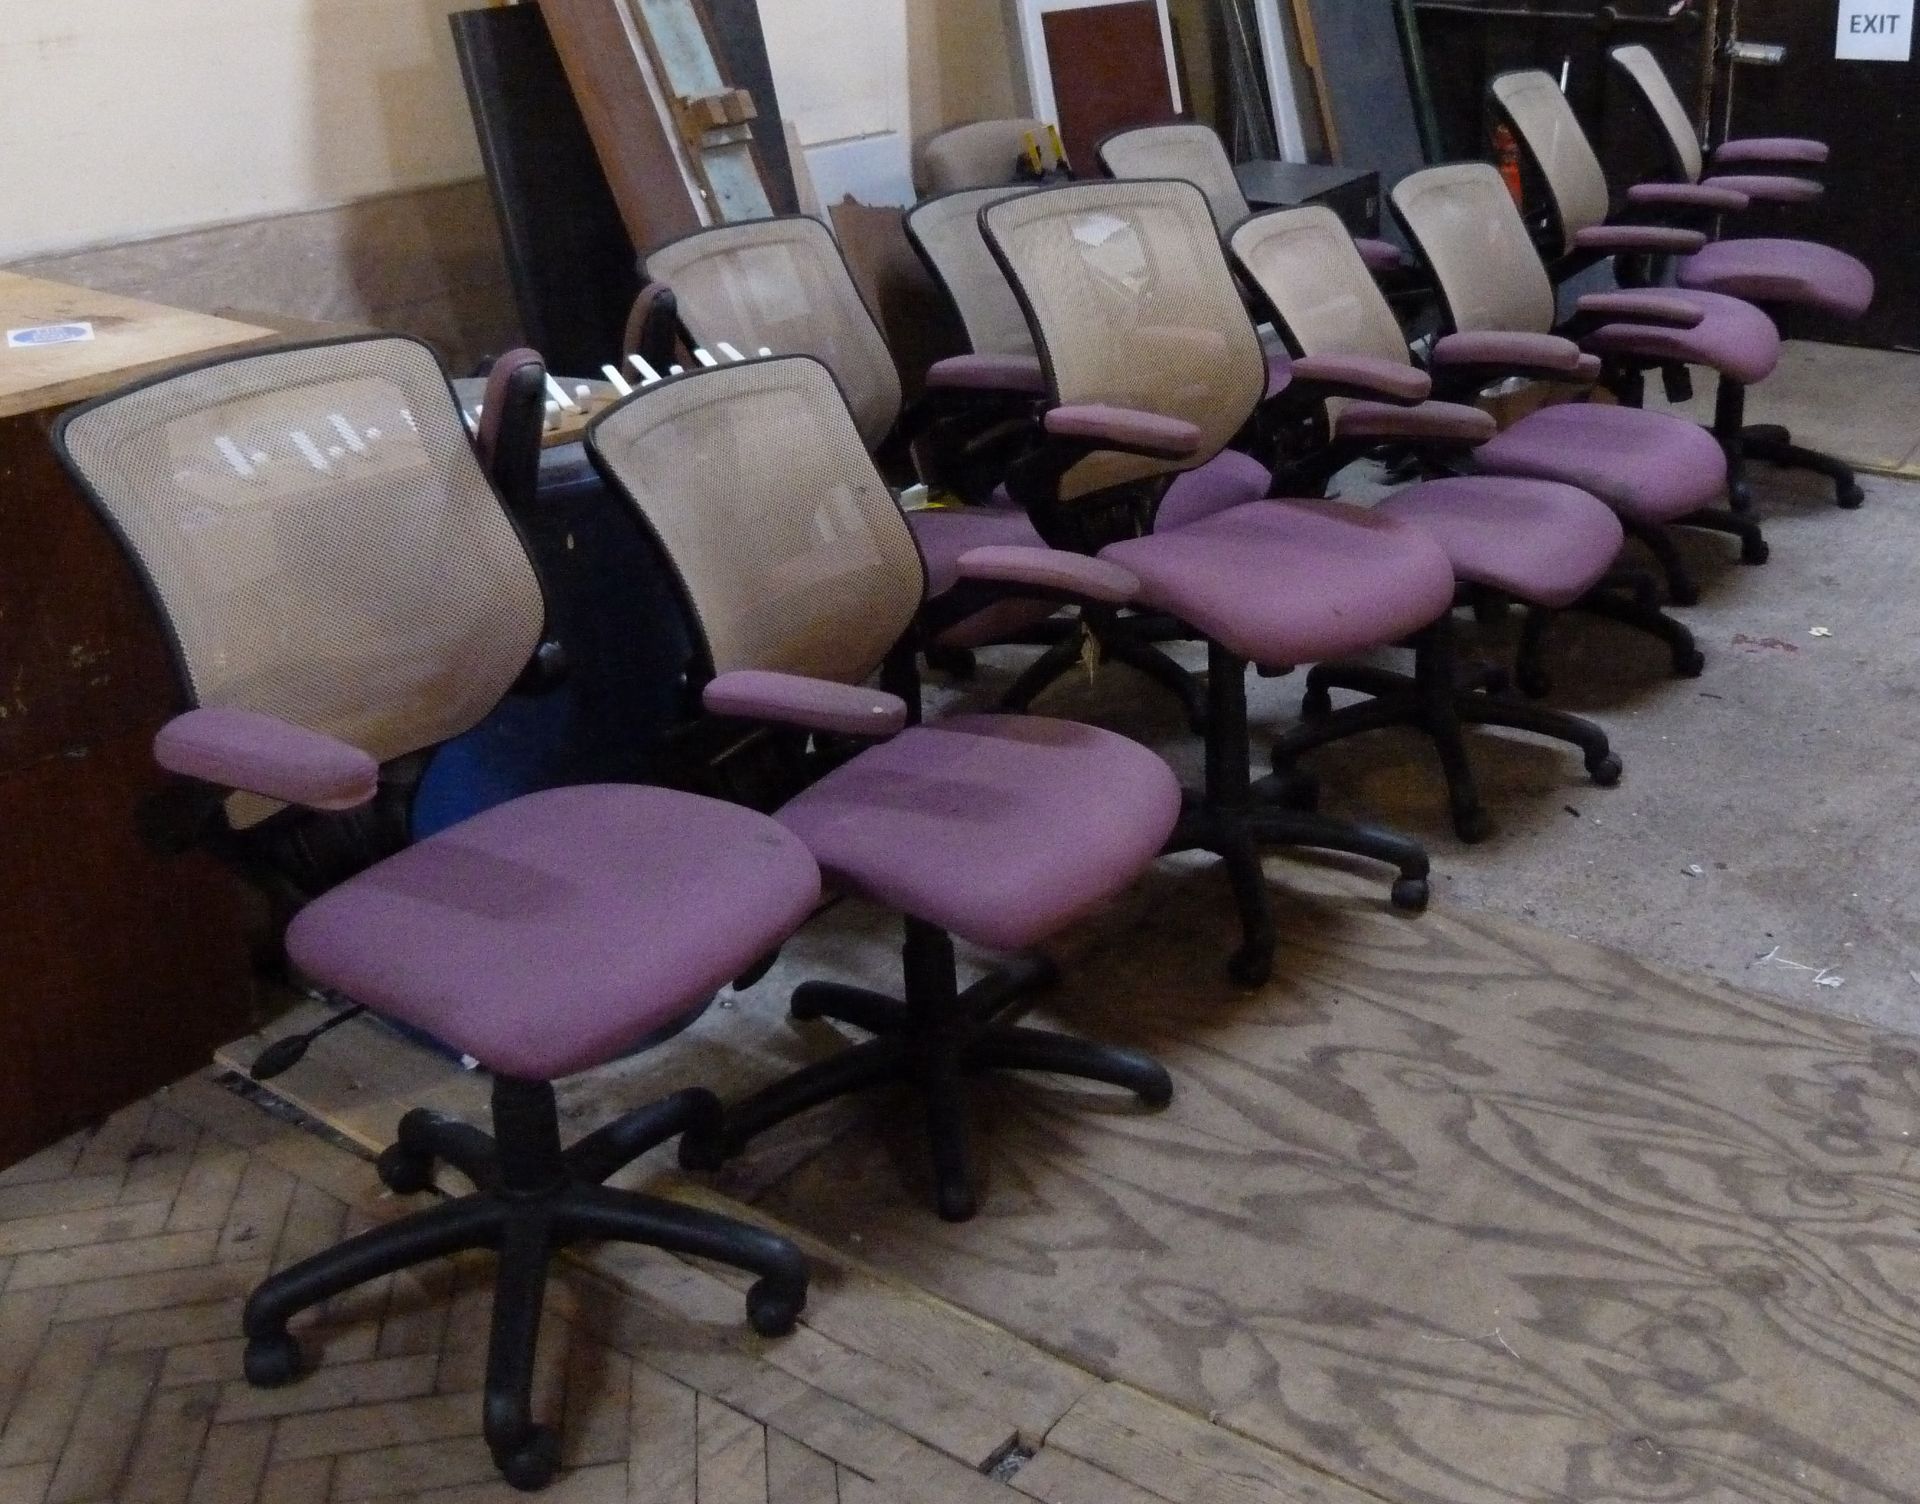 Ten operators chairs